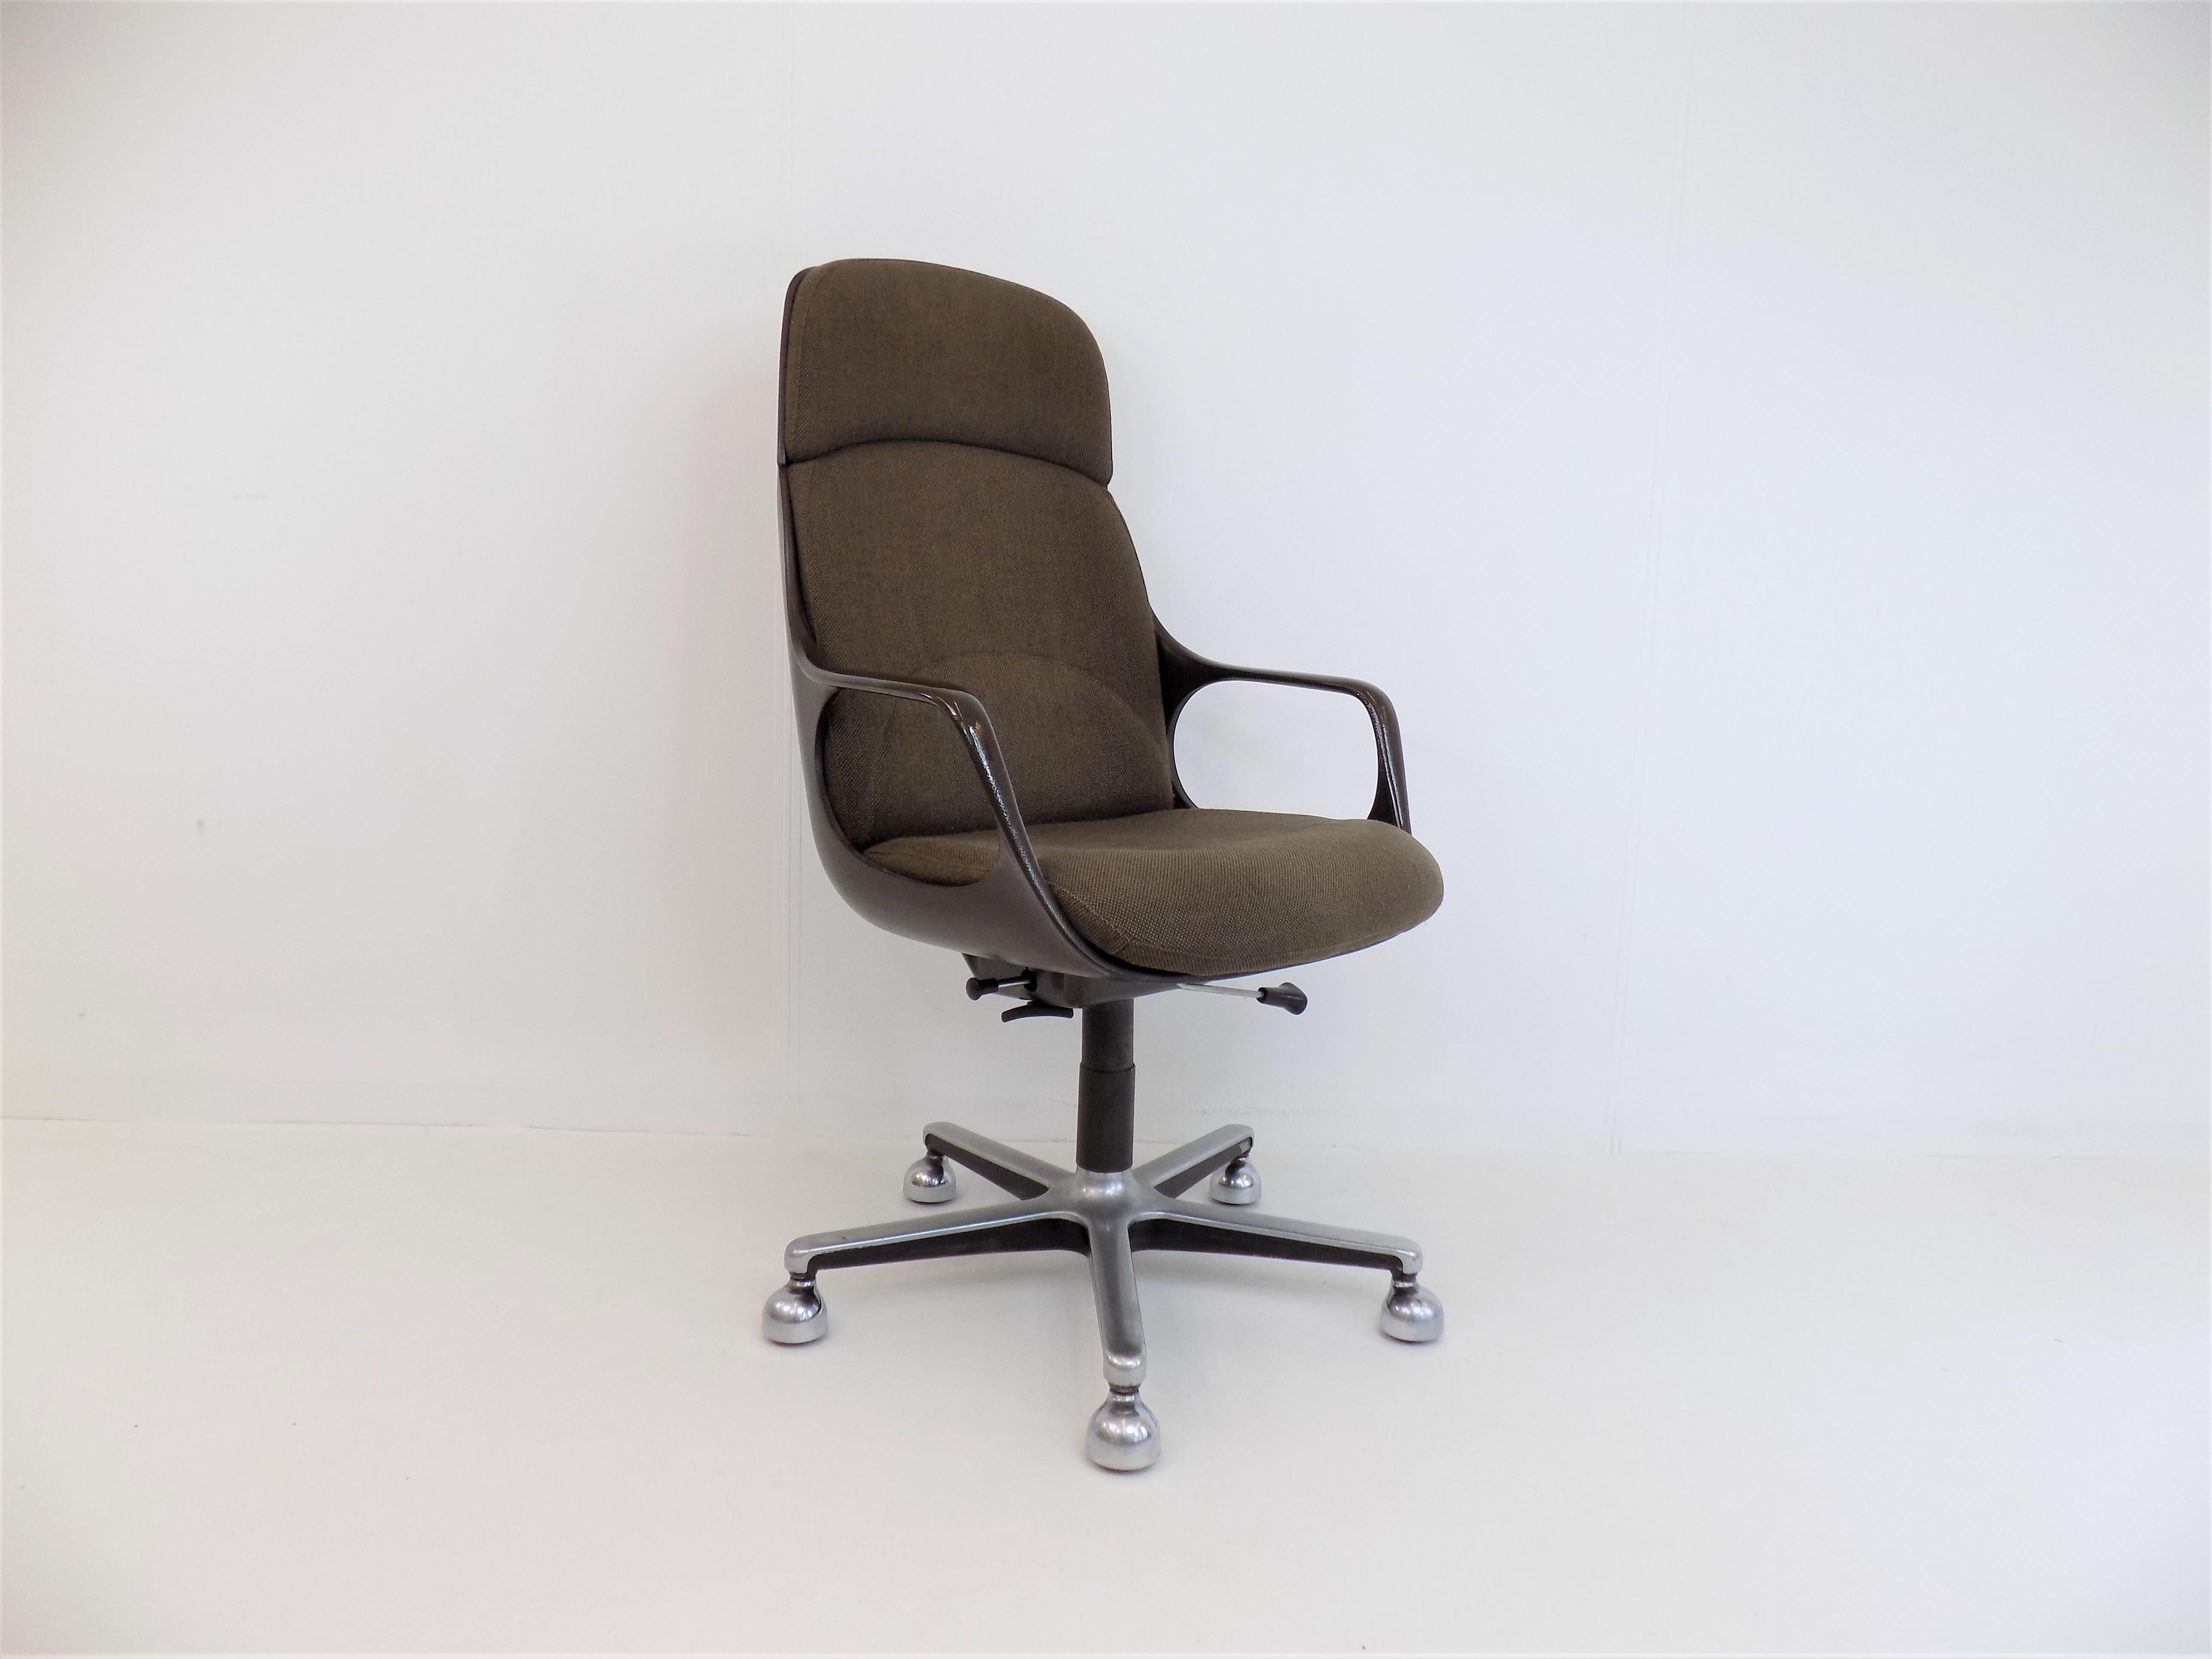 Drabert Concept Office Chair 2